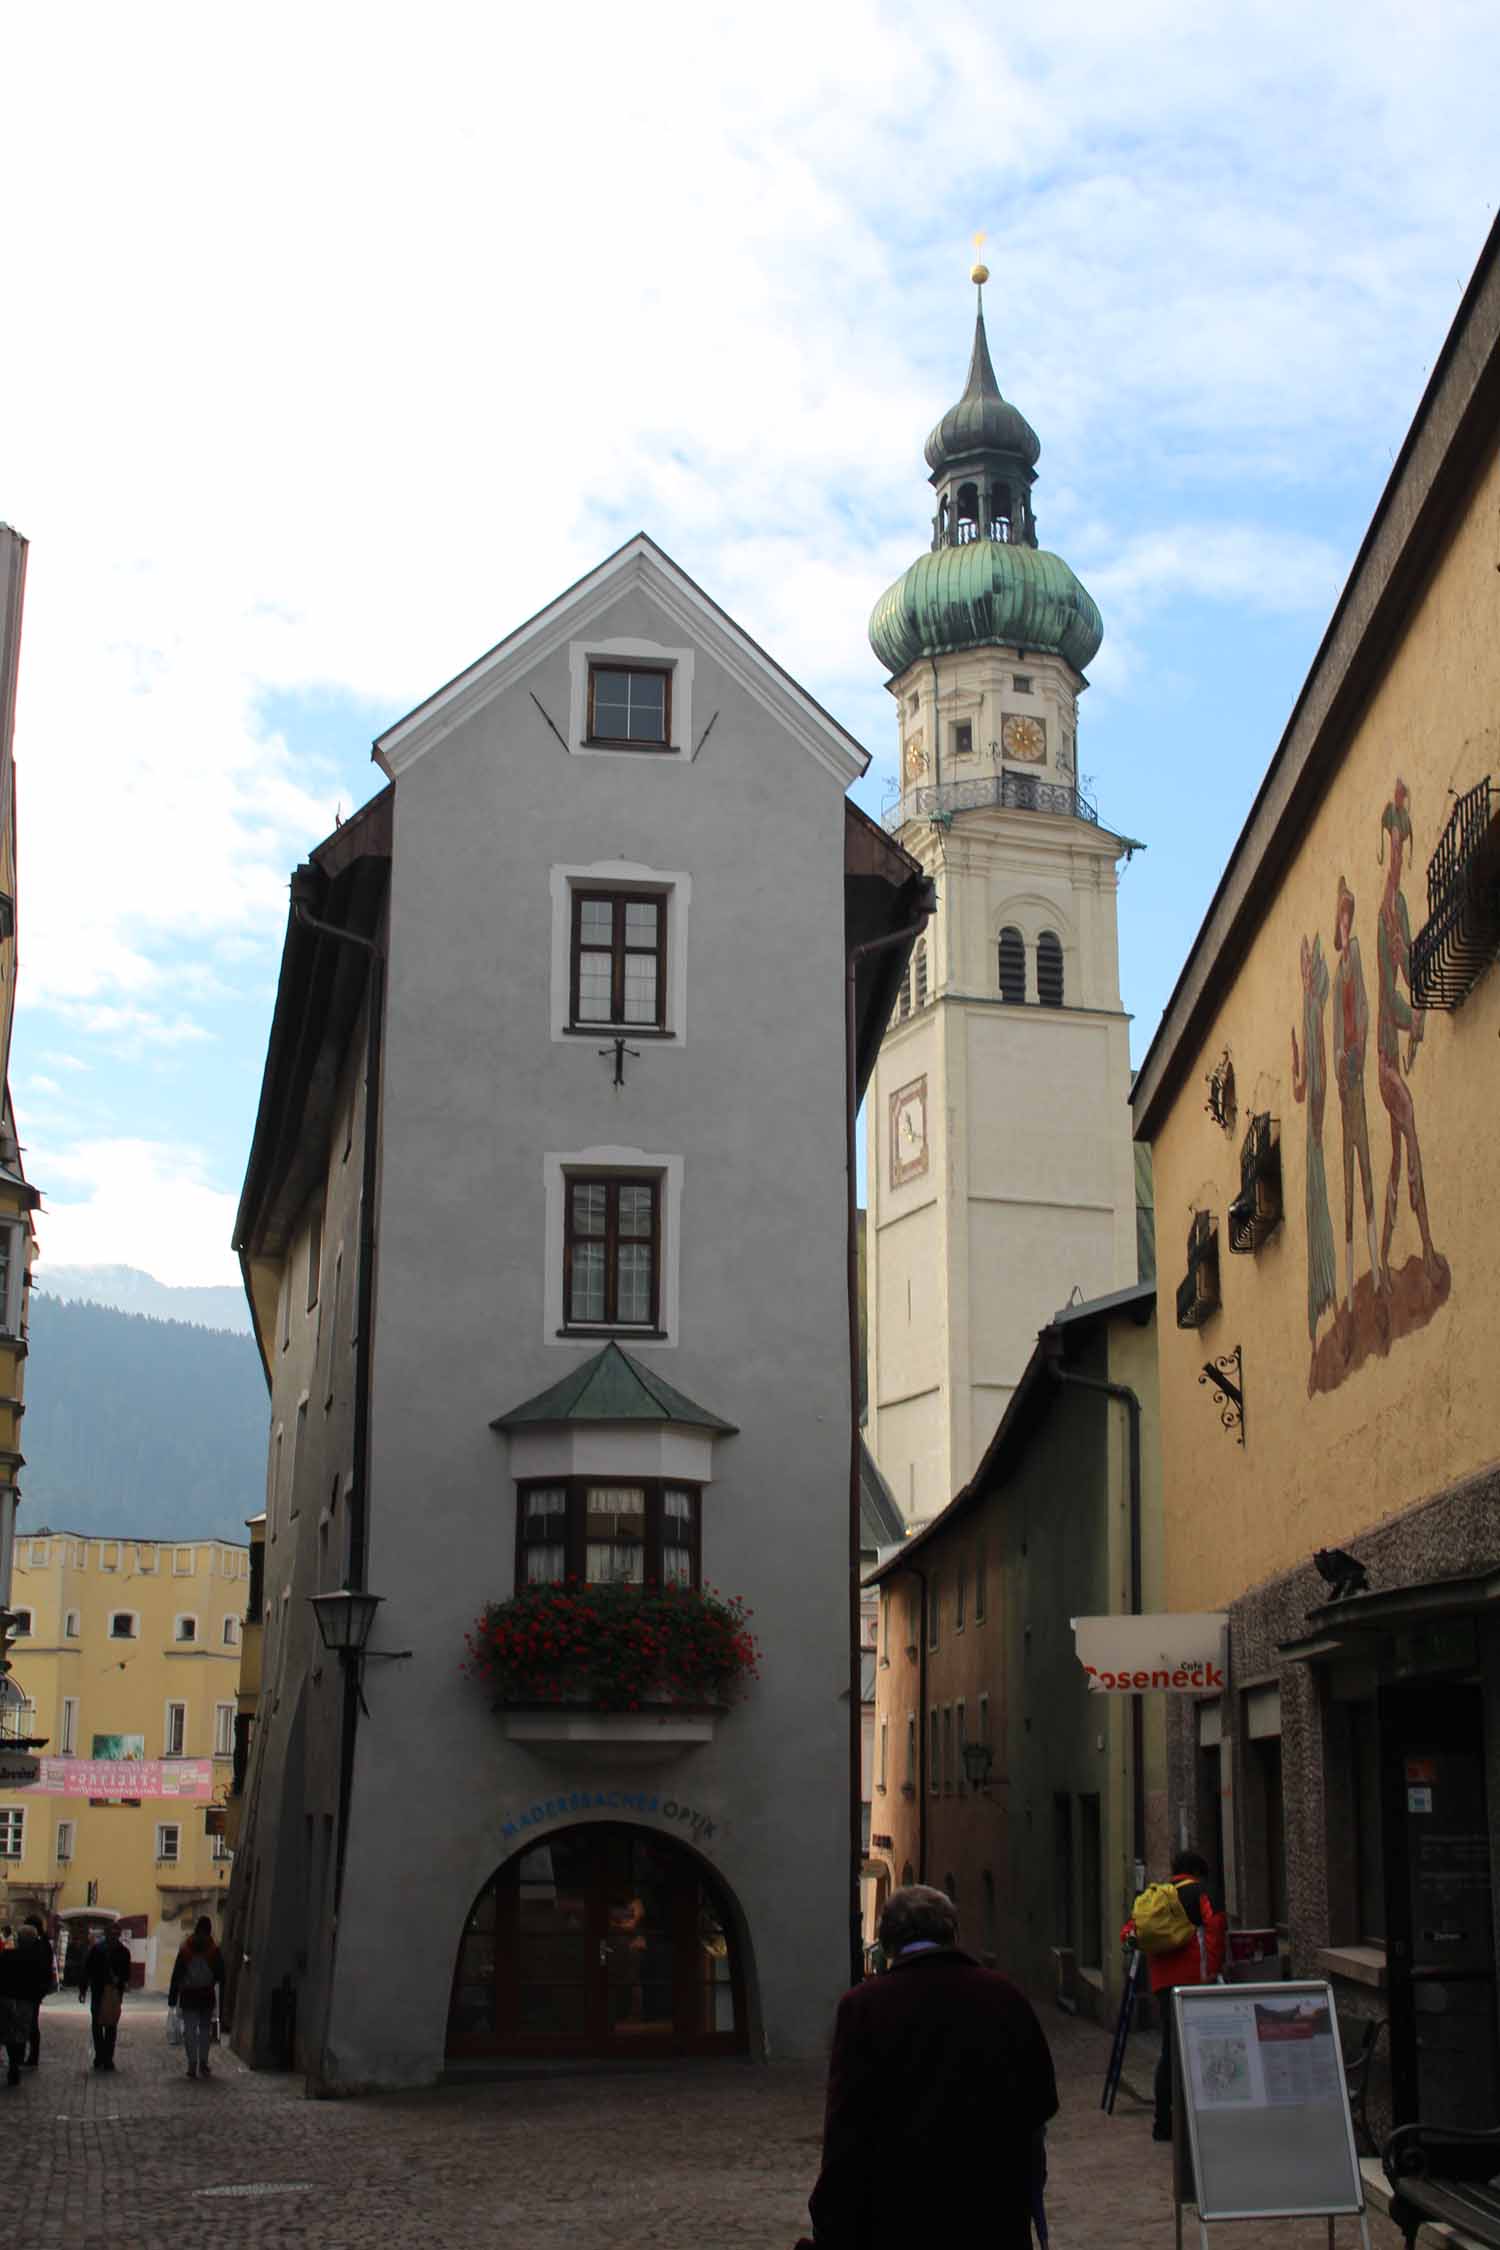 Hall en Tyrol, ruelle médiévale